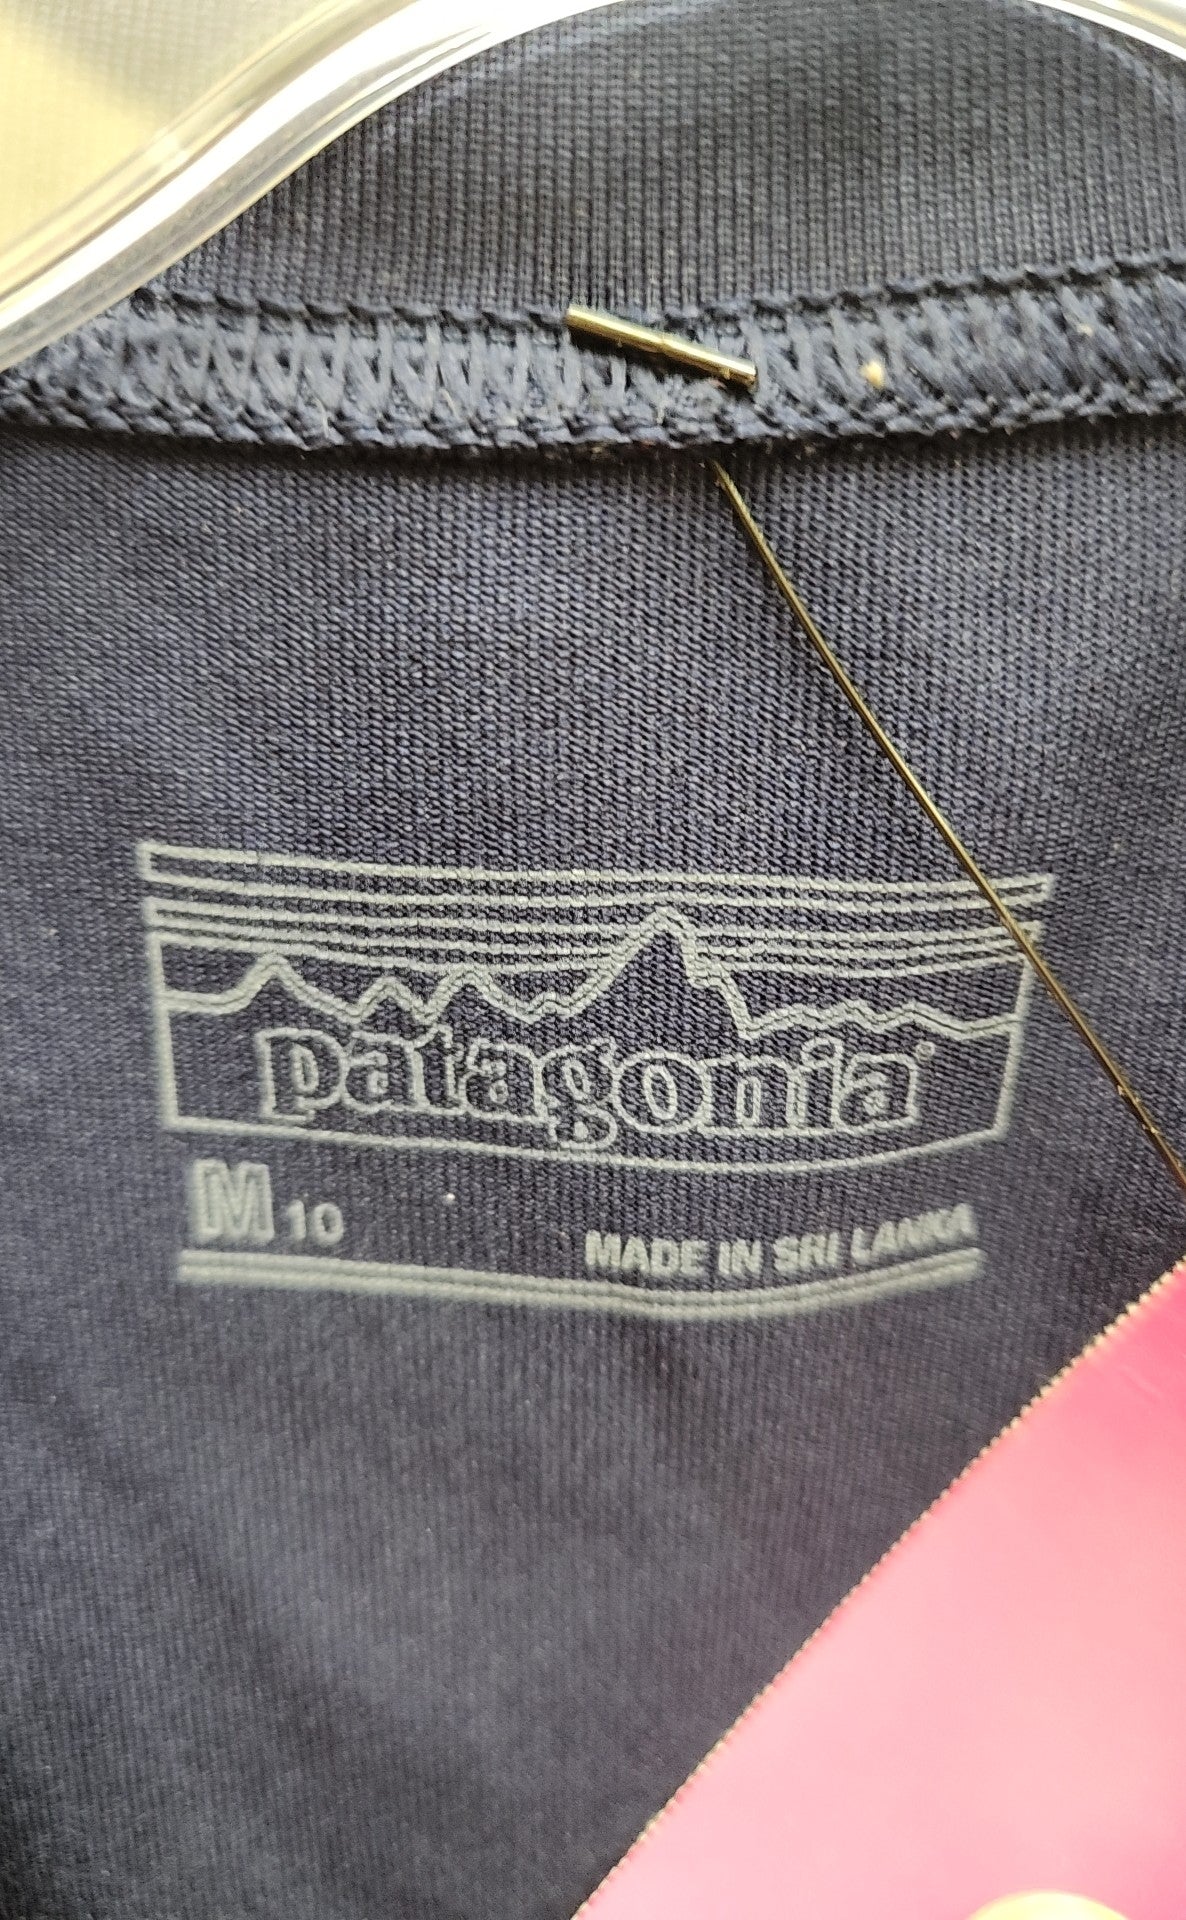 Patagonia Boy's Size 10 Navy Shirt